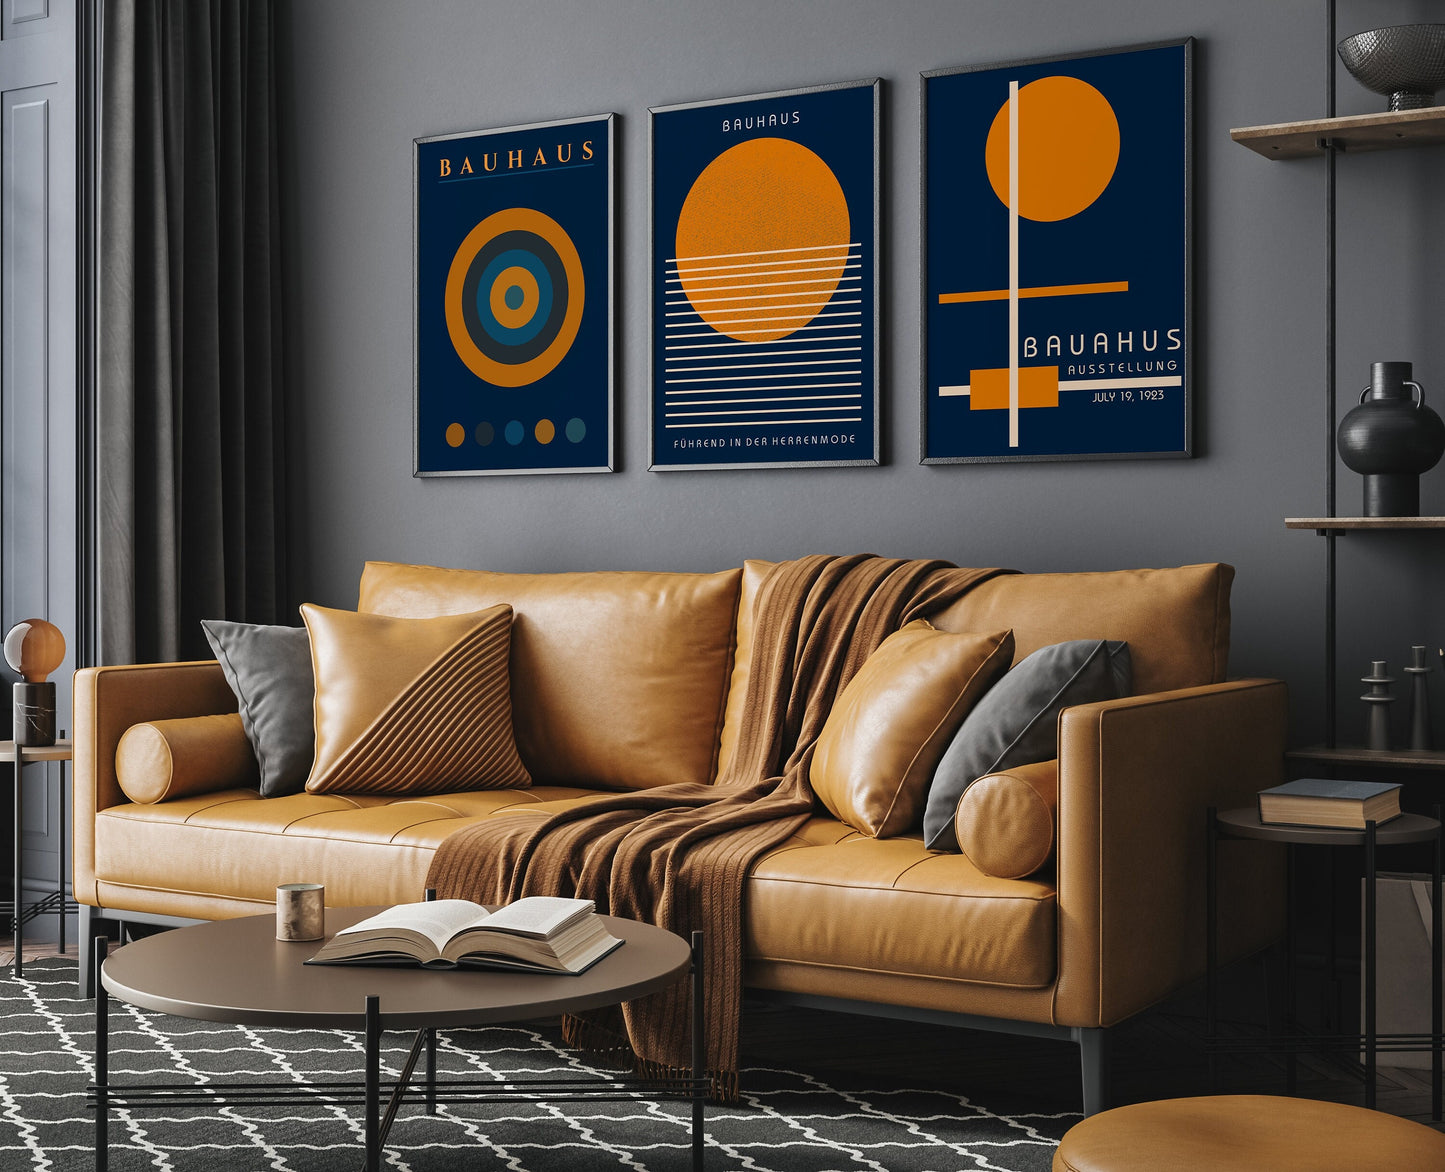 Bauhaus - Set of 3 Navy Blue Orange Posters